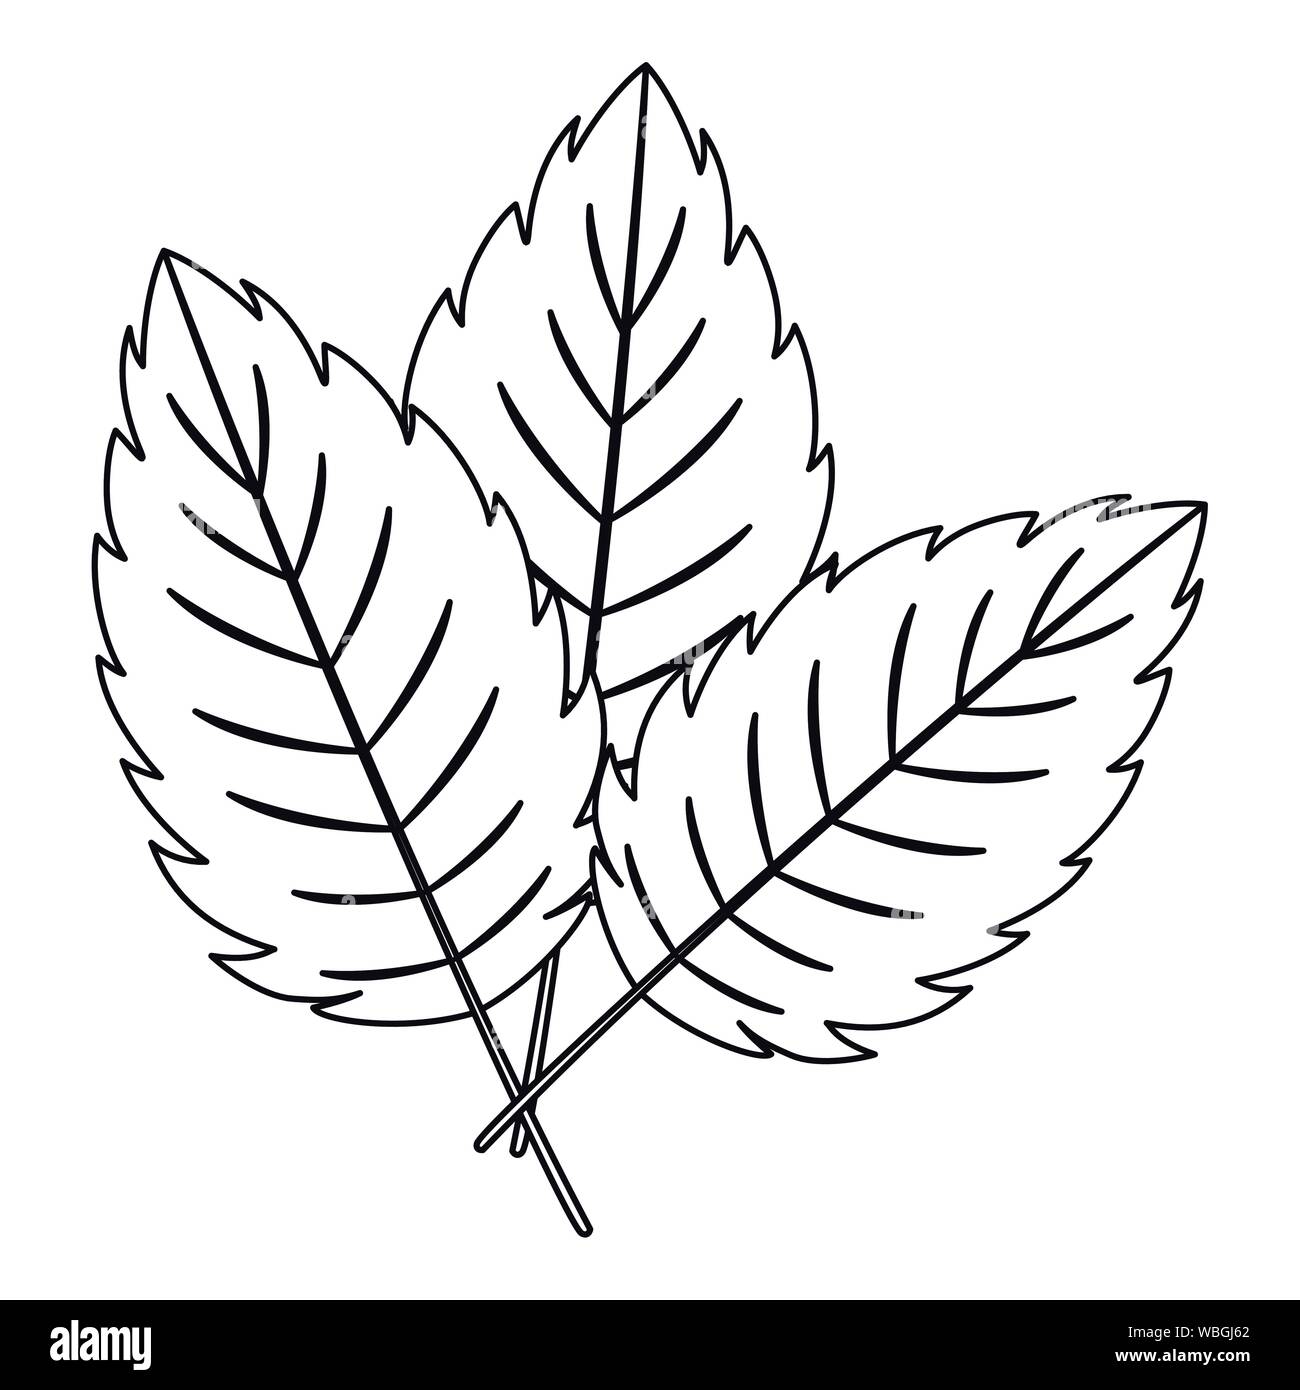 Sketch Leaf PNG Transparent Images Free Download  Vector Files  Pngtree